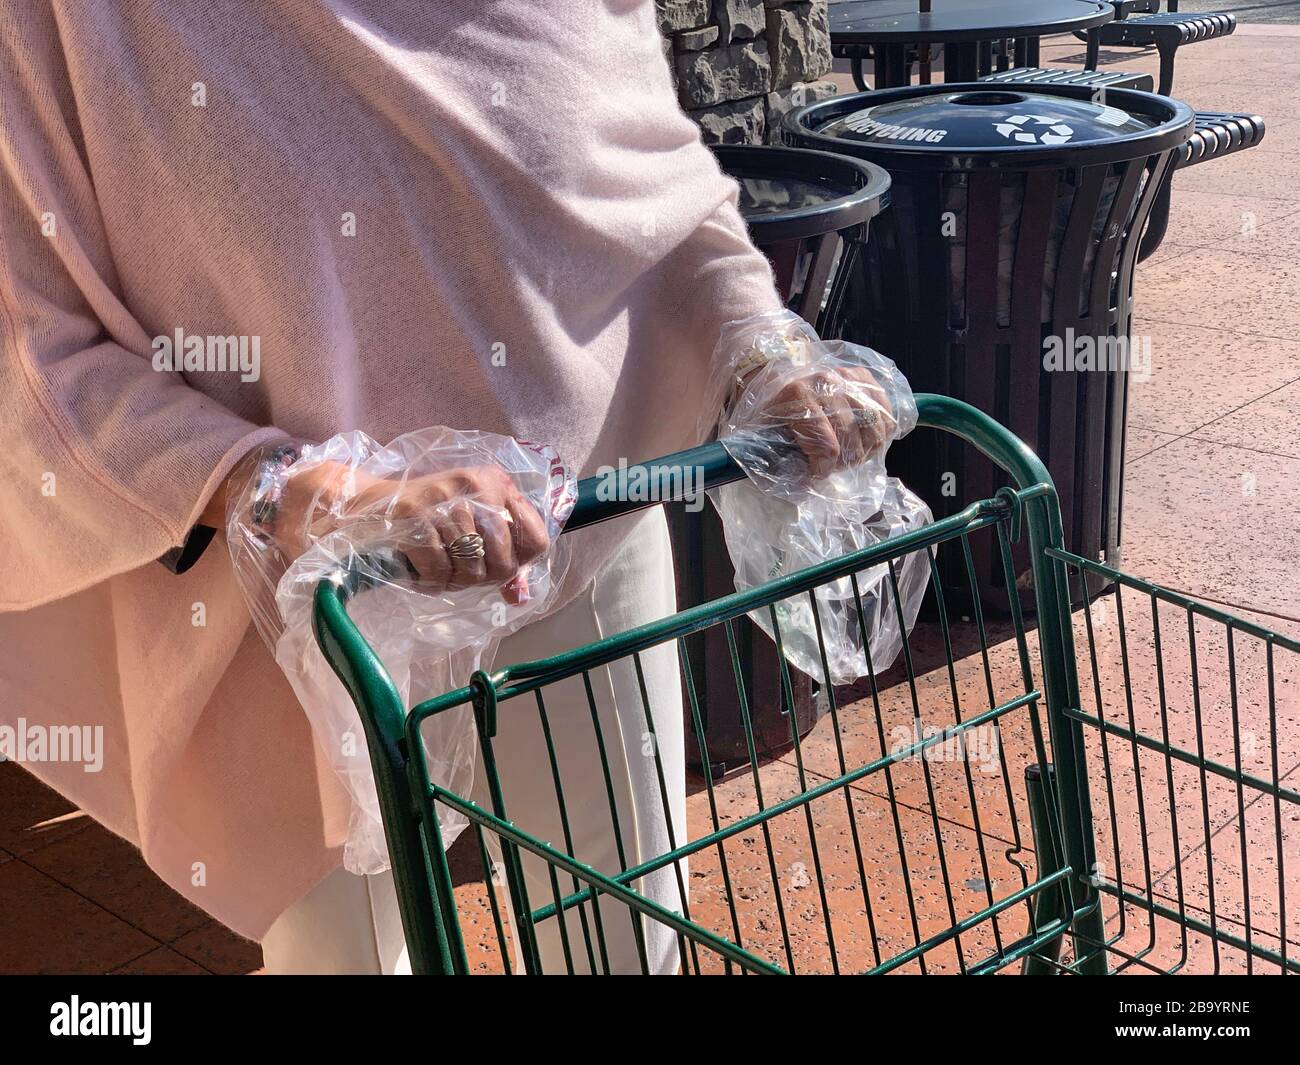 La jeune femme utilise des sacs en plastique comme gants pour éviter tout contact avec Coronavirus lors des courses d'épicerie. Banque D'Images